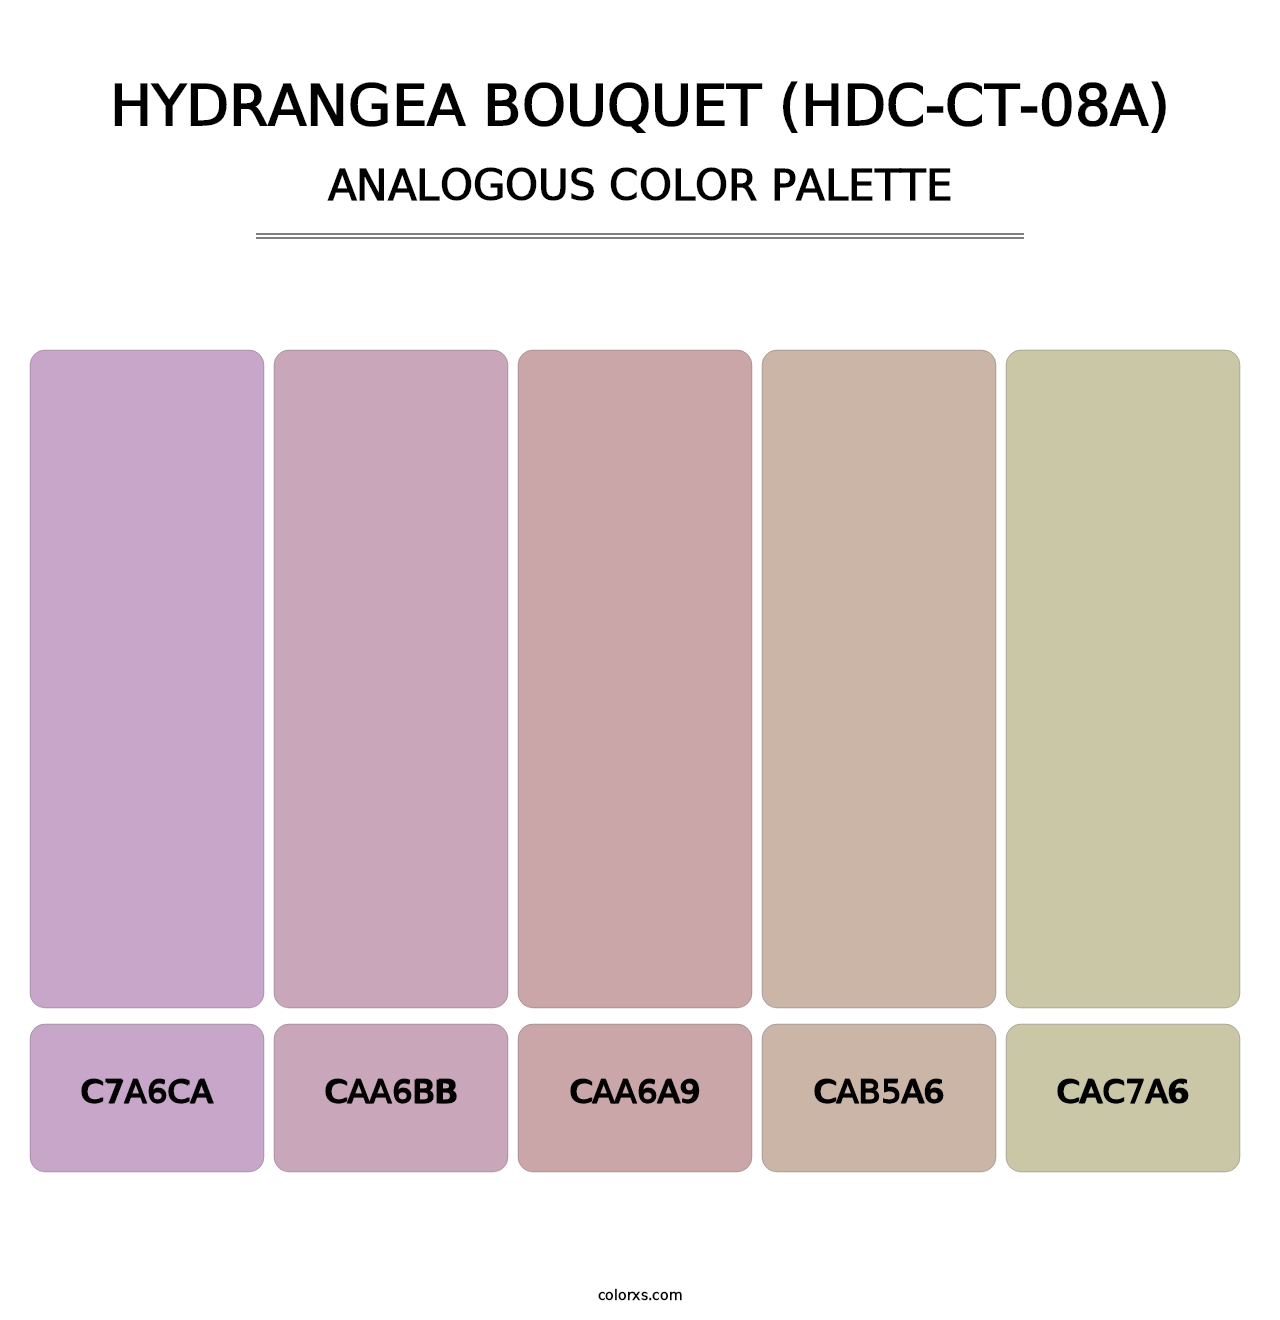 Hydrangea Bouquet (HDC-CT-08A) - Analogous Color Palette